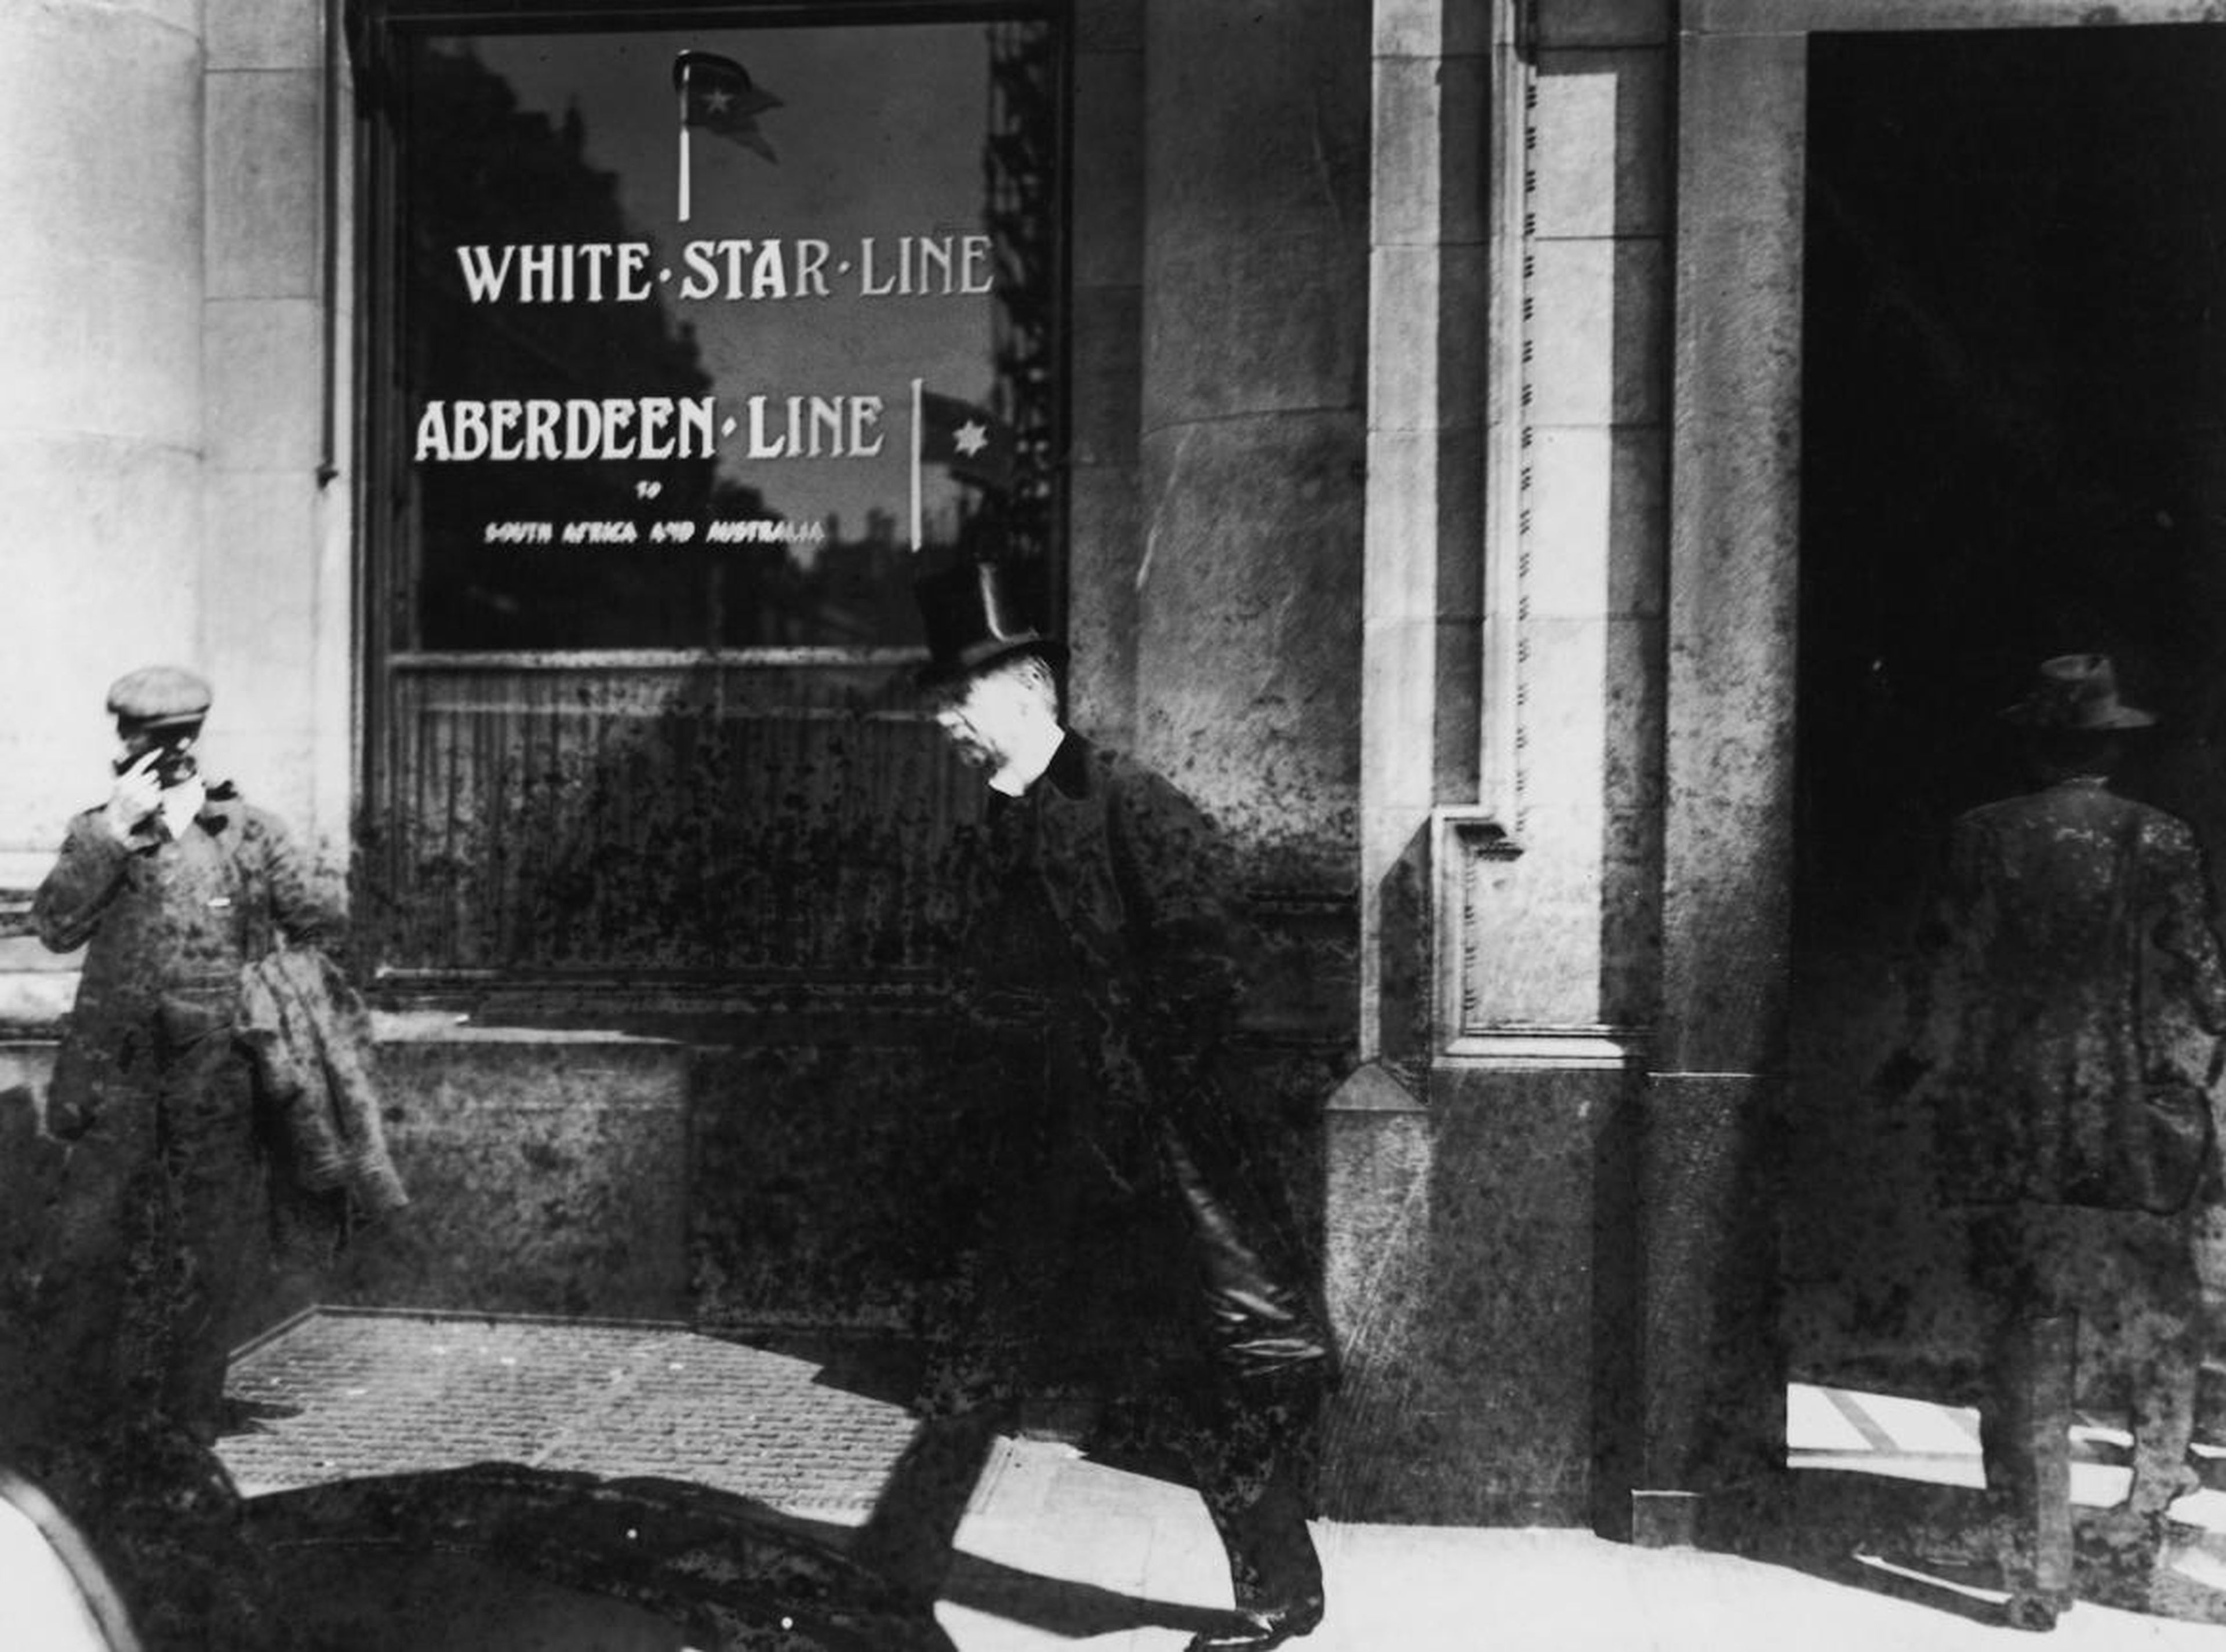 Oficina de White Star Line después del hundimiento del Titanic en 1912.